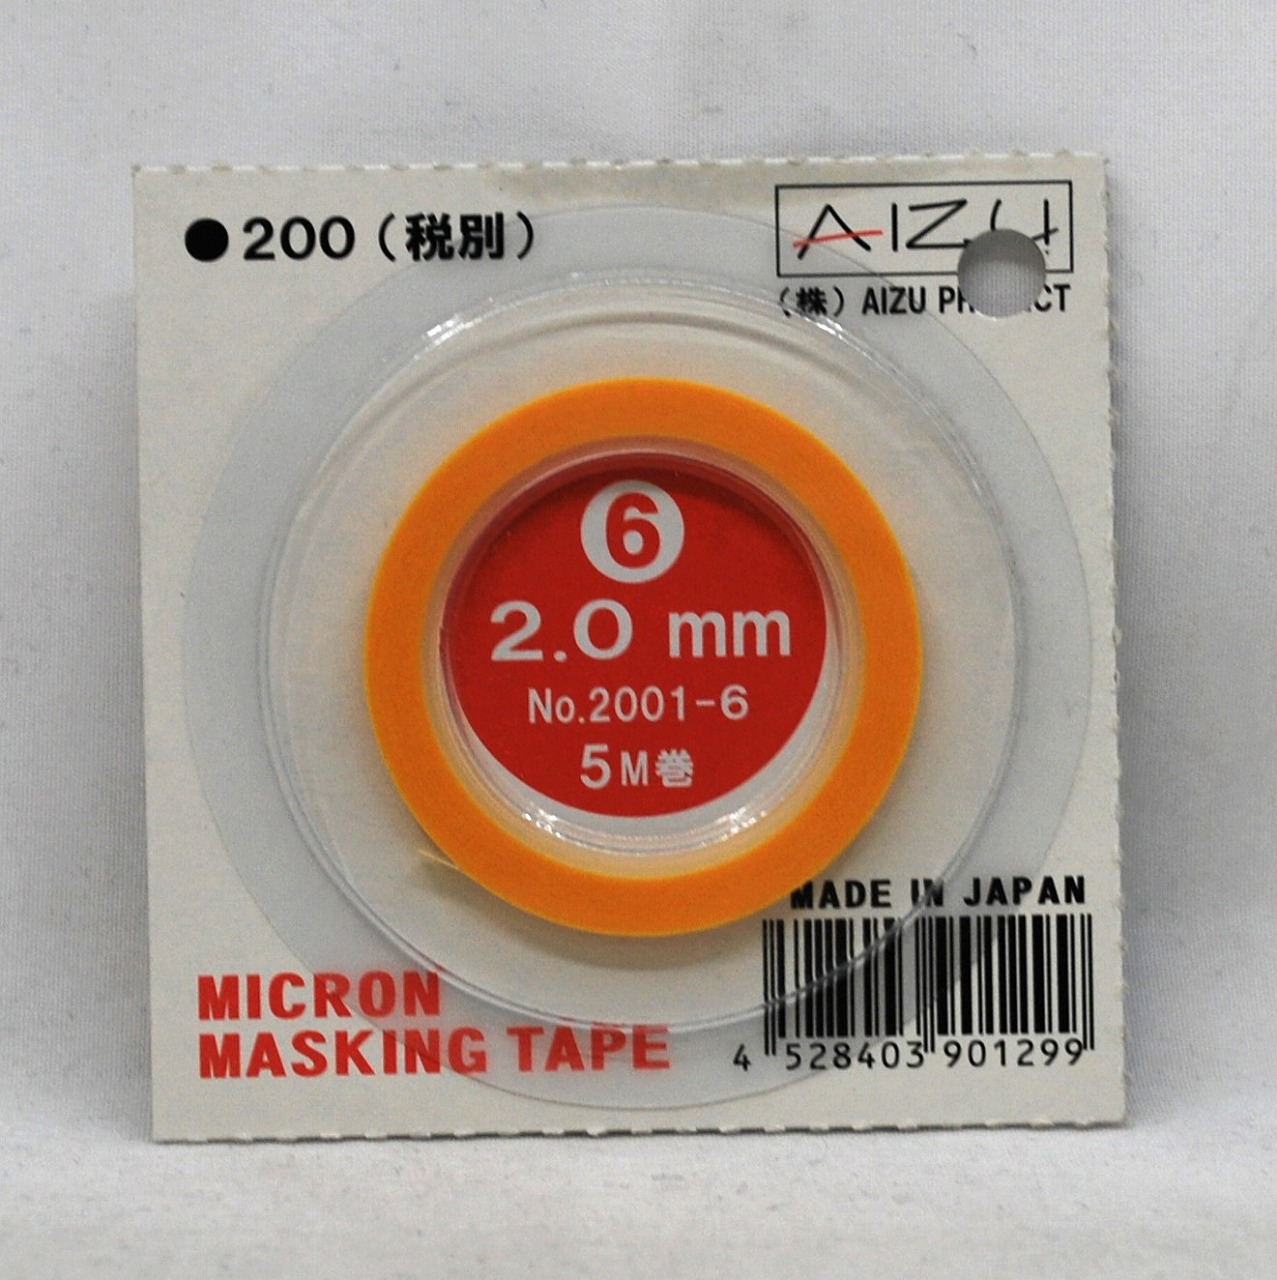 アイズプロジェクト ミクロンマスキングテープ ⑥ 2.0mm 5M巻